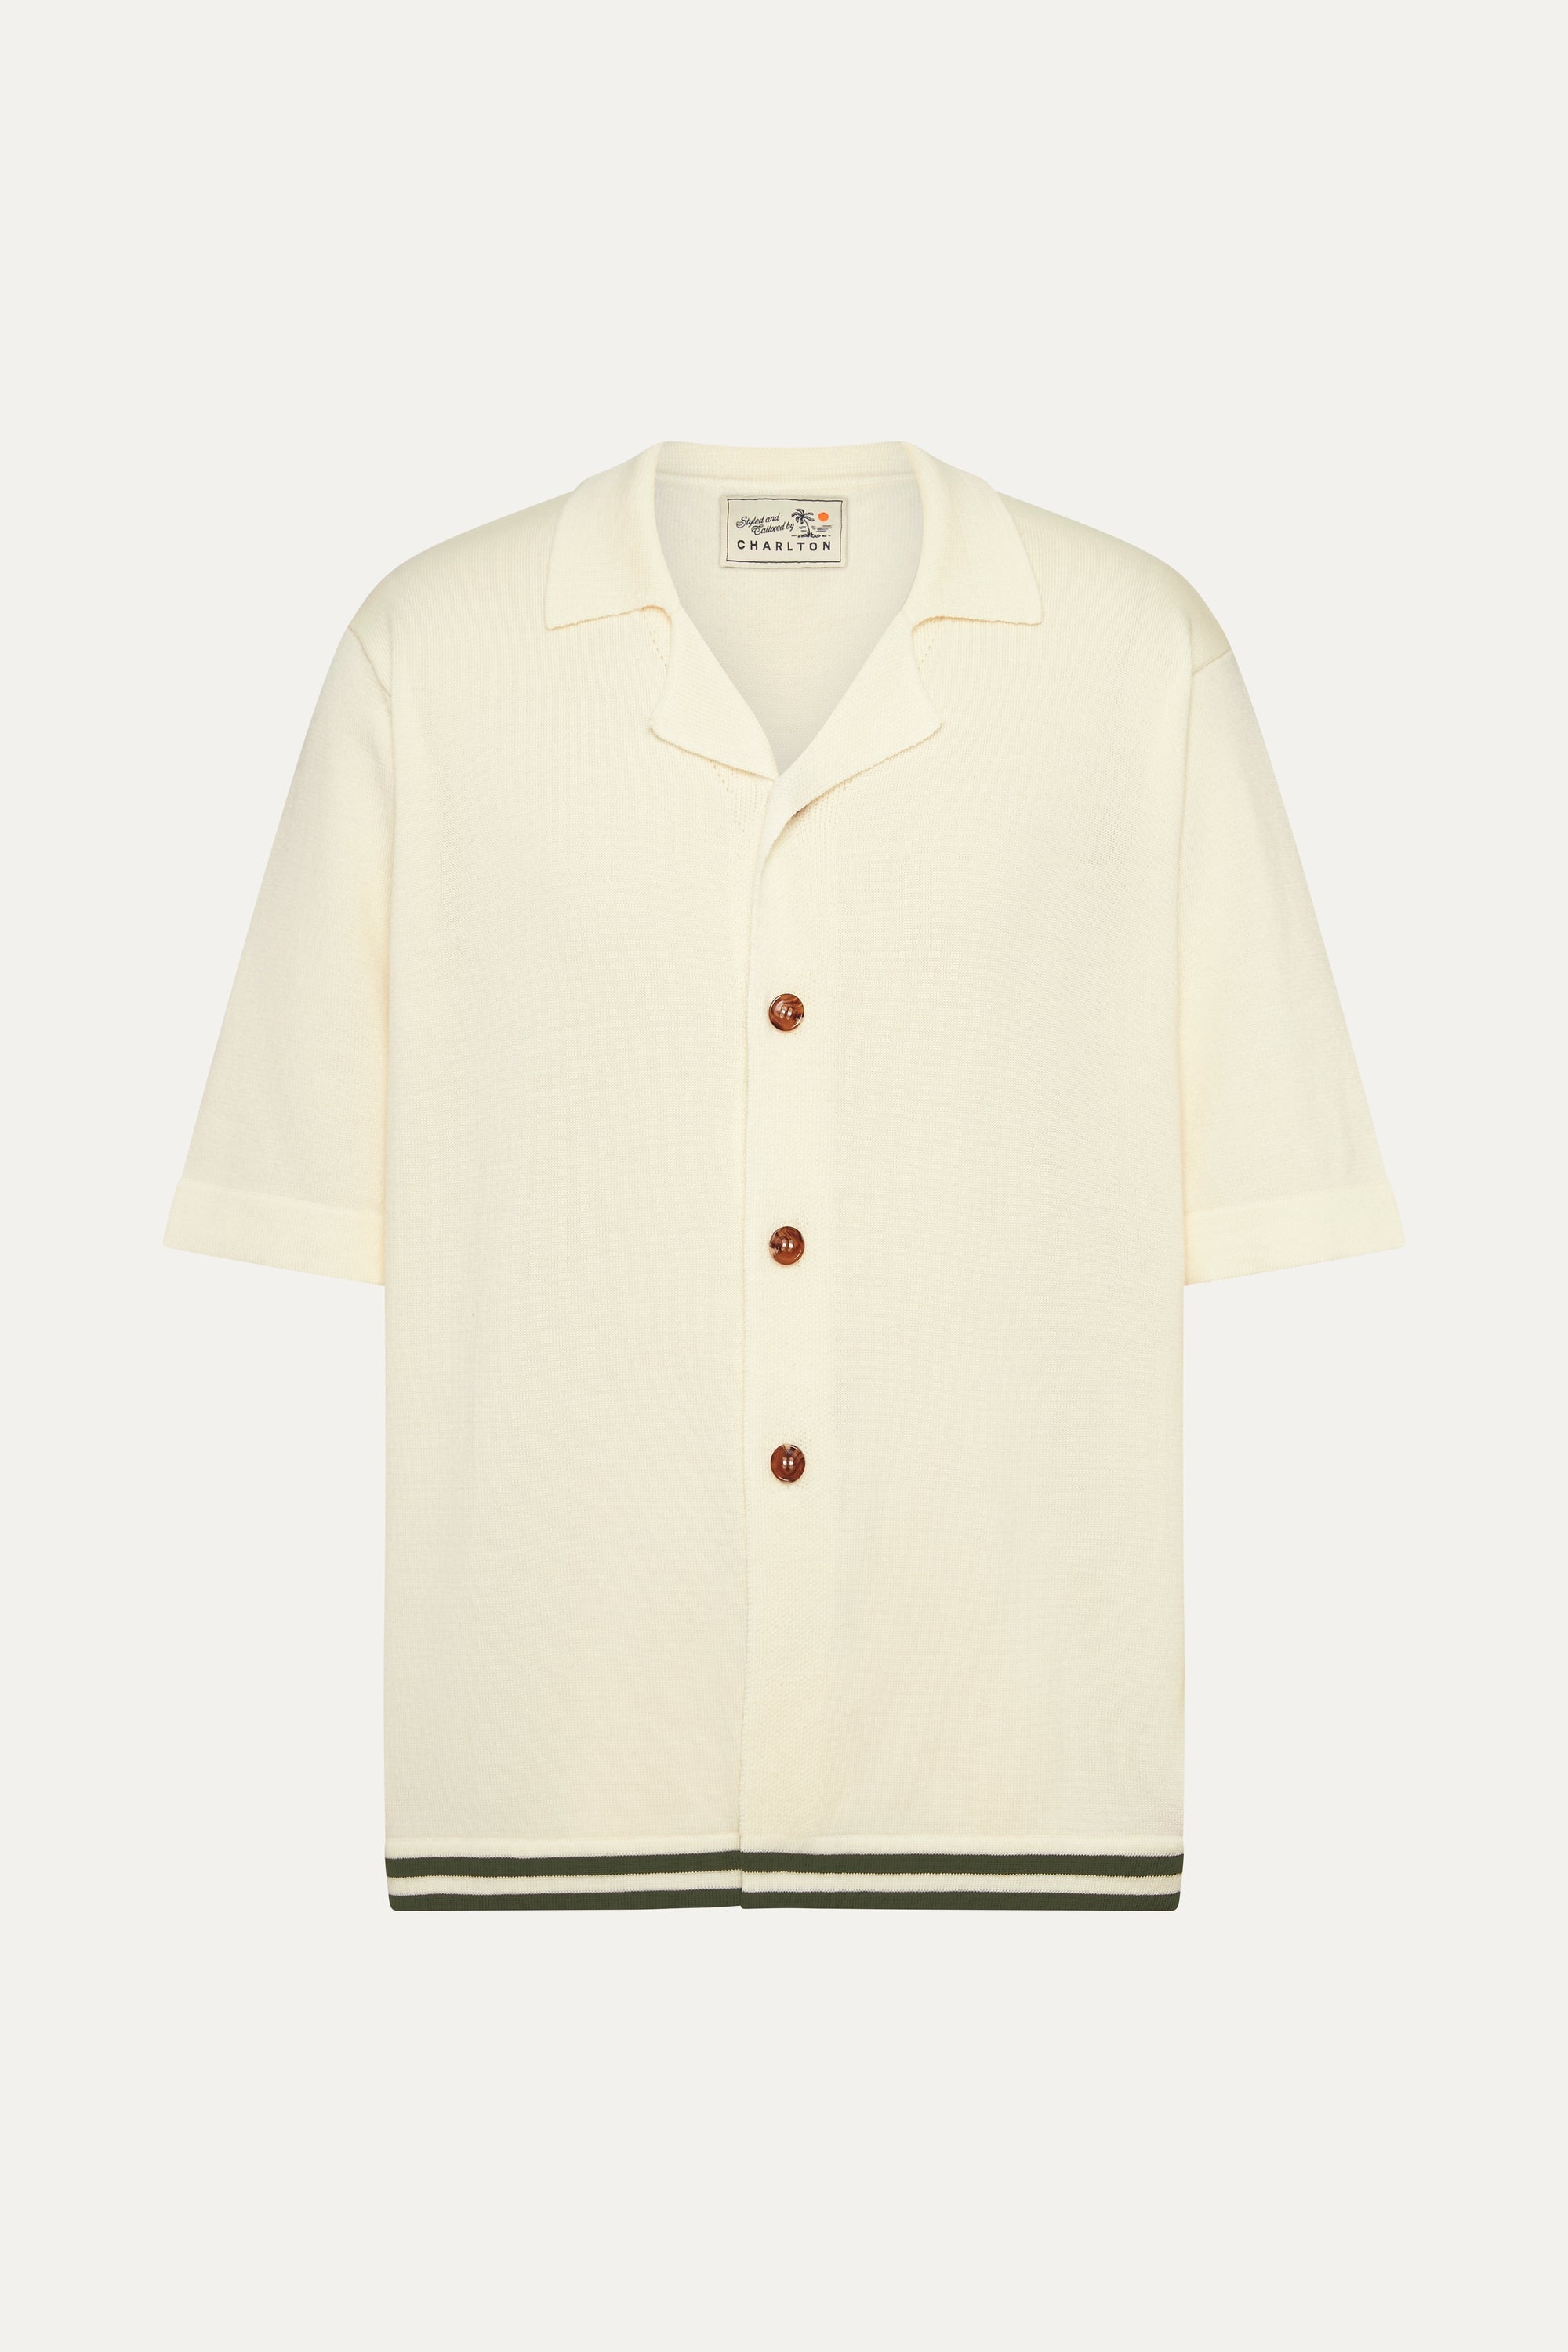 S/S Shirt in Cream / Safari Merino Wool